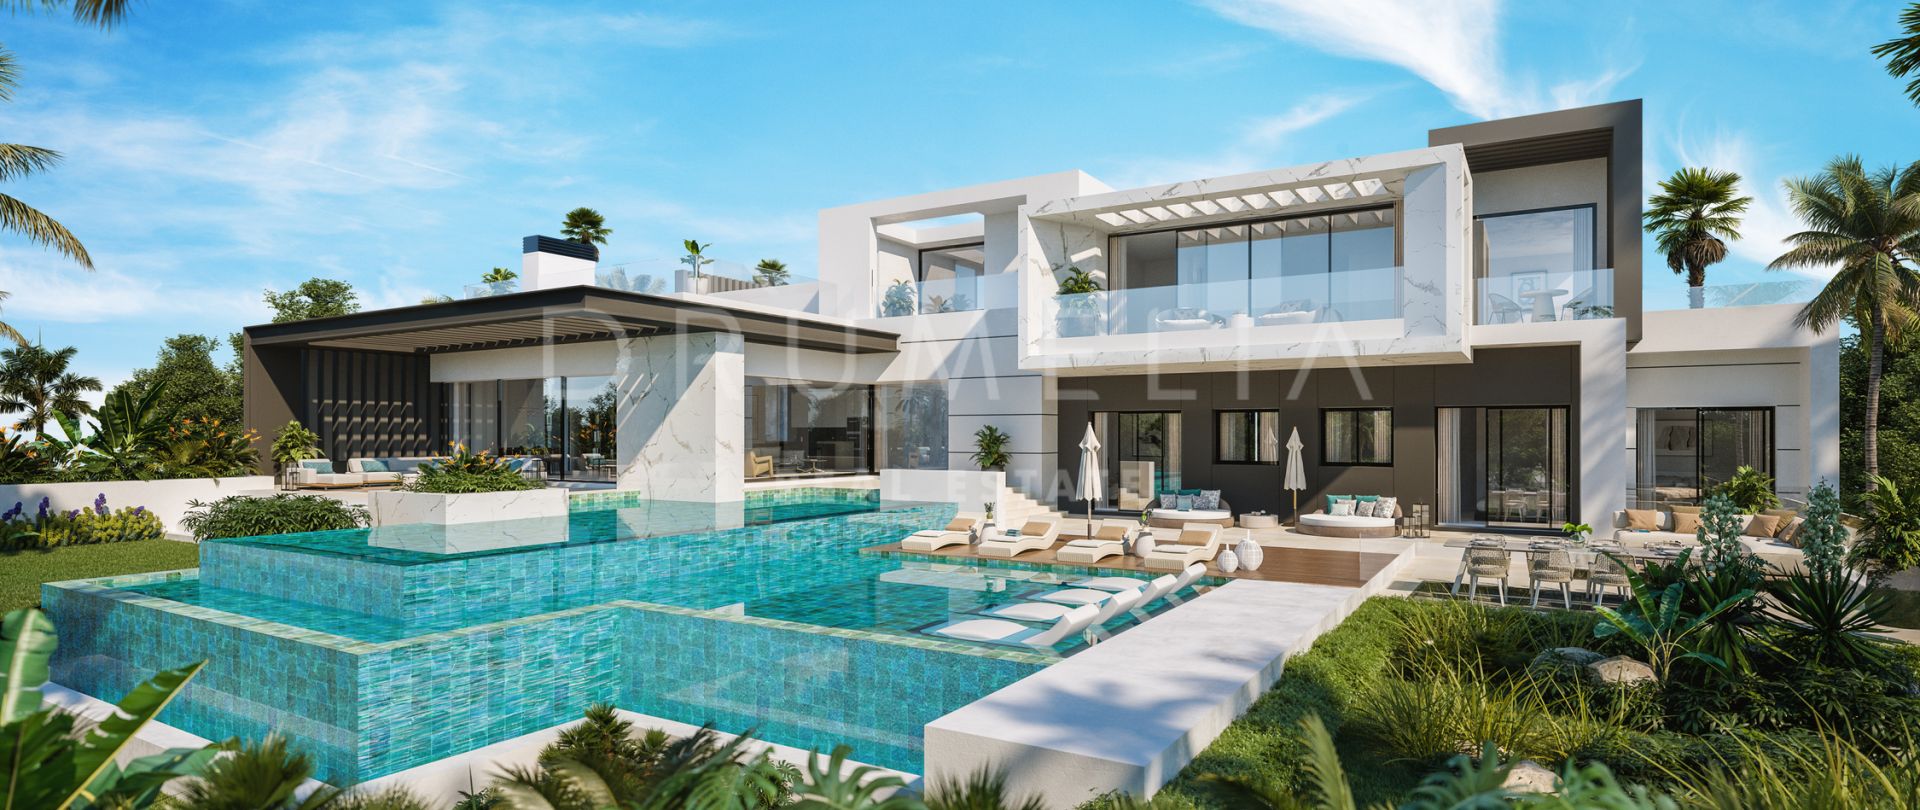 Villa moderne haut de gamme en construction dans le magnifique quartier d'El Paraiso Alto, Benahavis